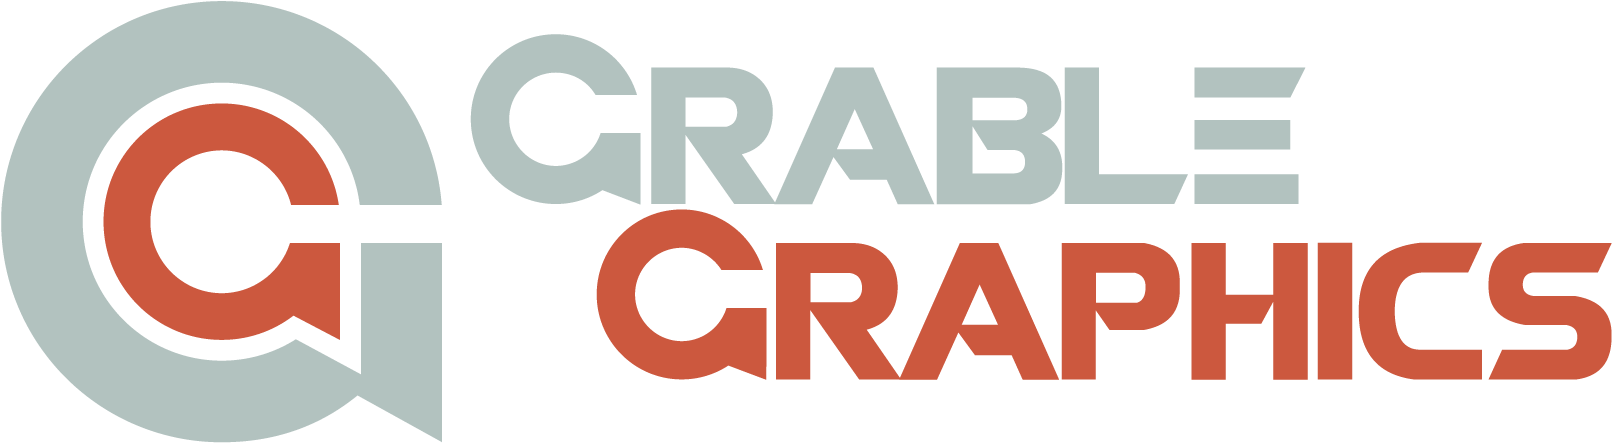 Grable Graphics - Tan (1643x472)